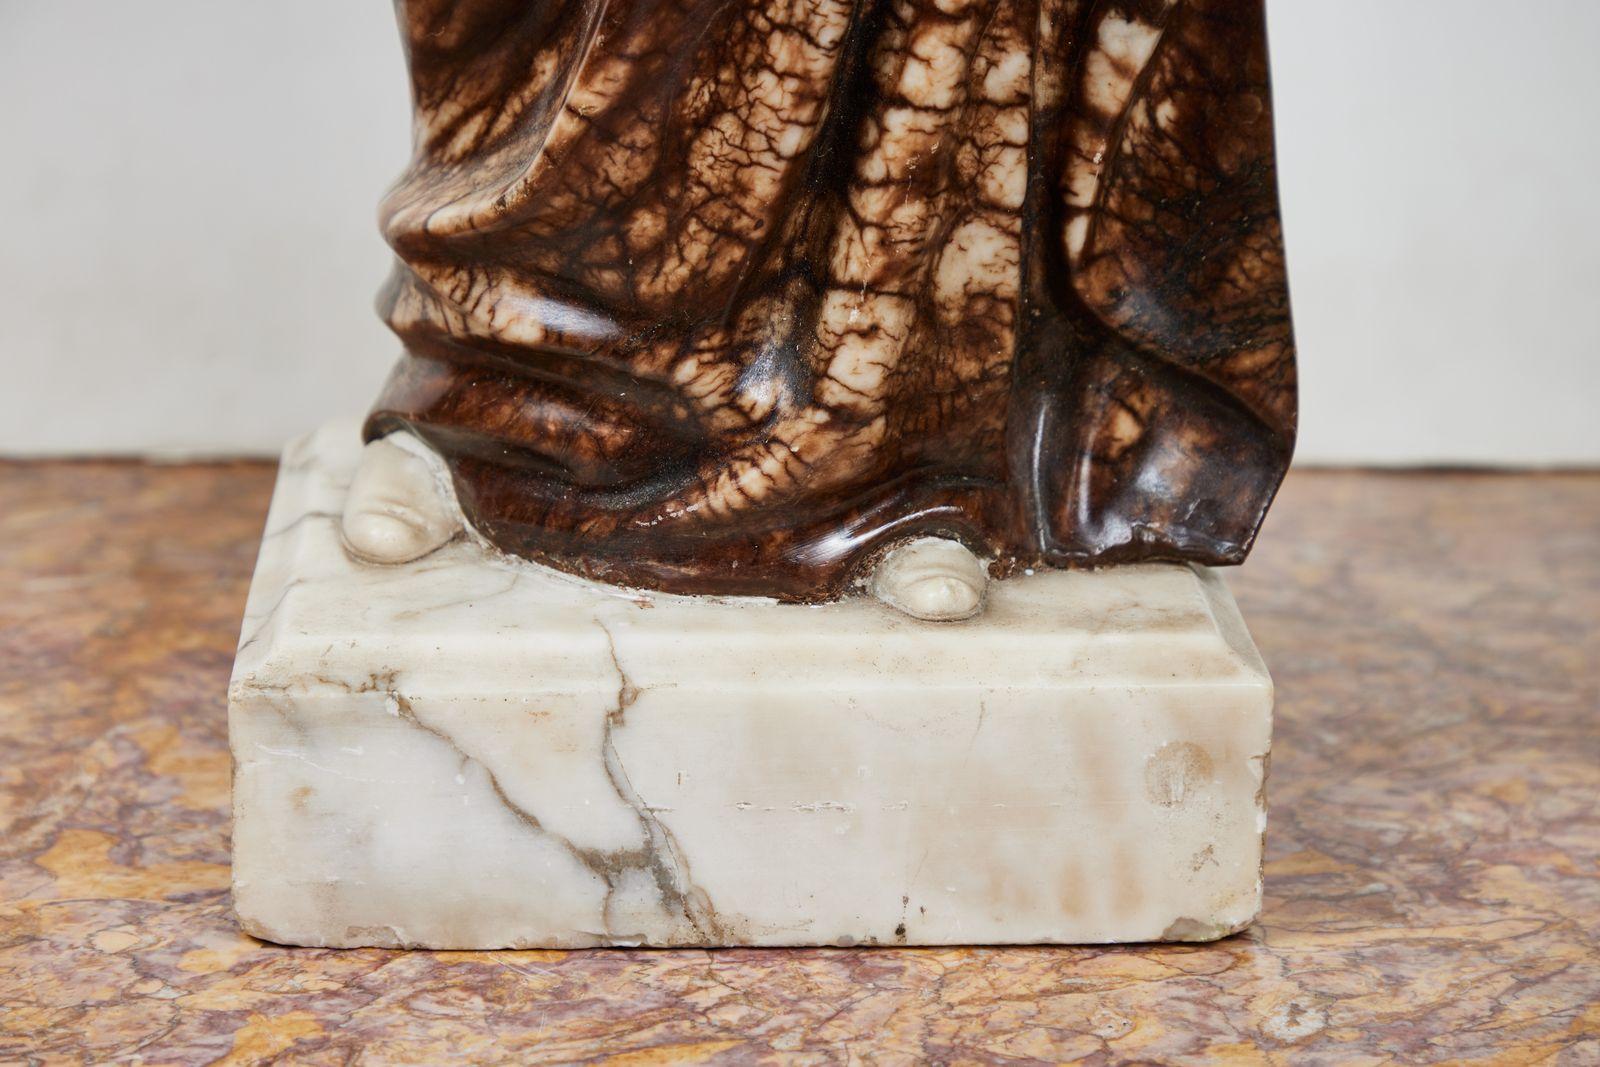 Sculpture antique en albâtre massif, délicatement sculptée, représentant le célèbre poète et philosophe italien Dante Aligheri (1265-1321). Le personnage, vêtu d'une riche robe fluide, tient un livre et porte un bonnet d'érudit couronné de lauriers.